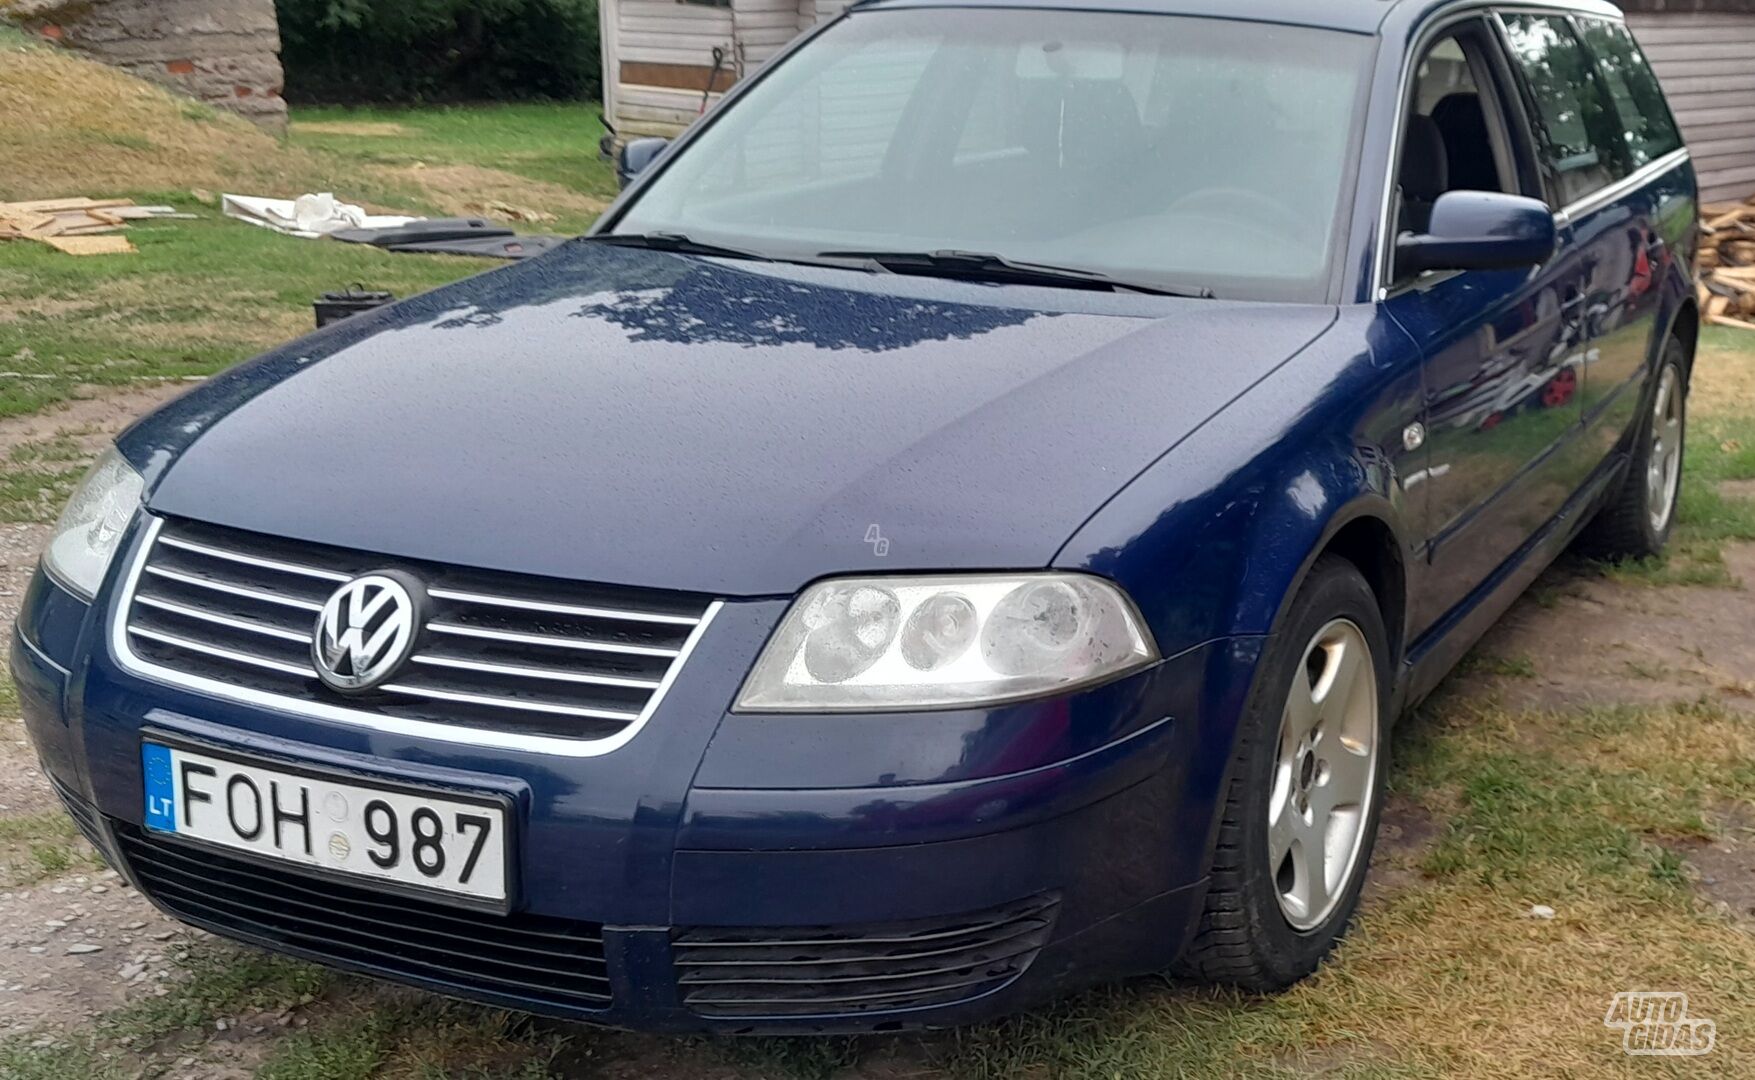 Volkswagen Passat TDI Basis 2002 m